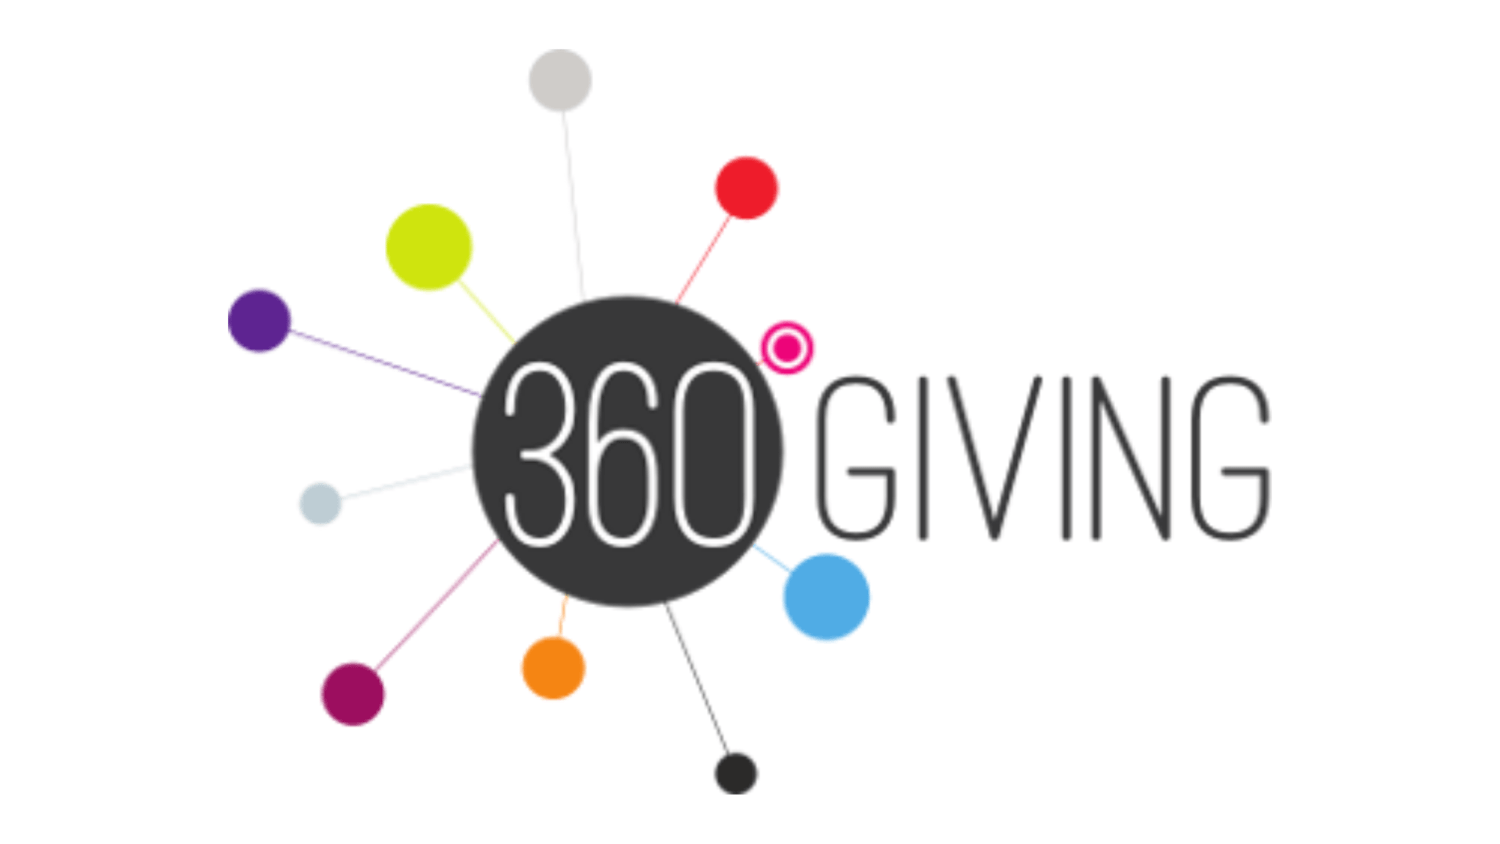 360 Giving Data